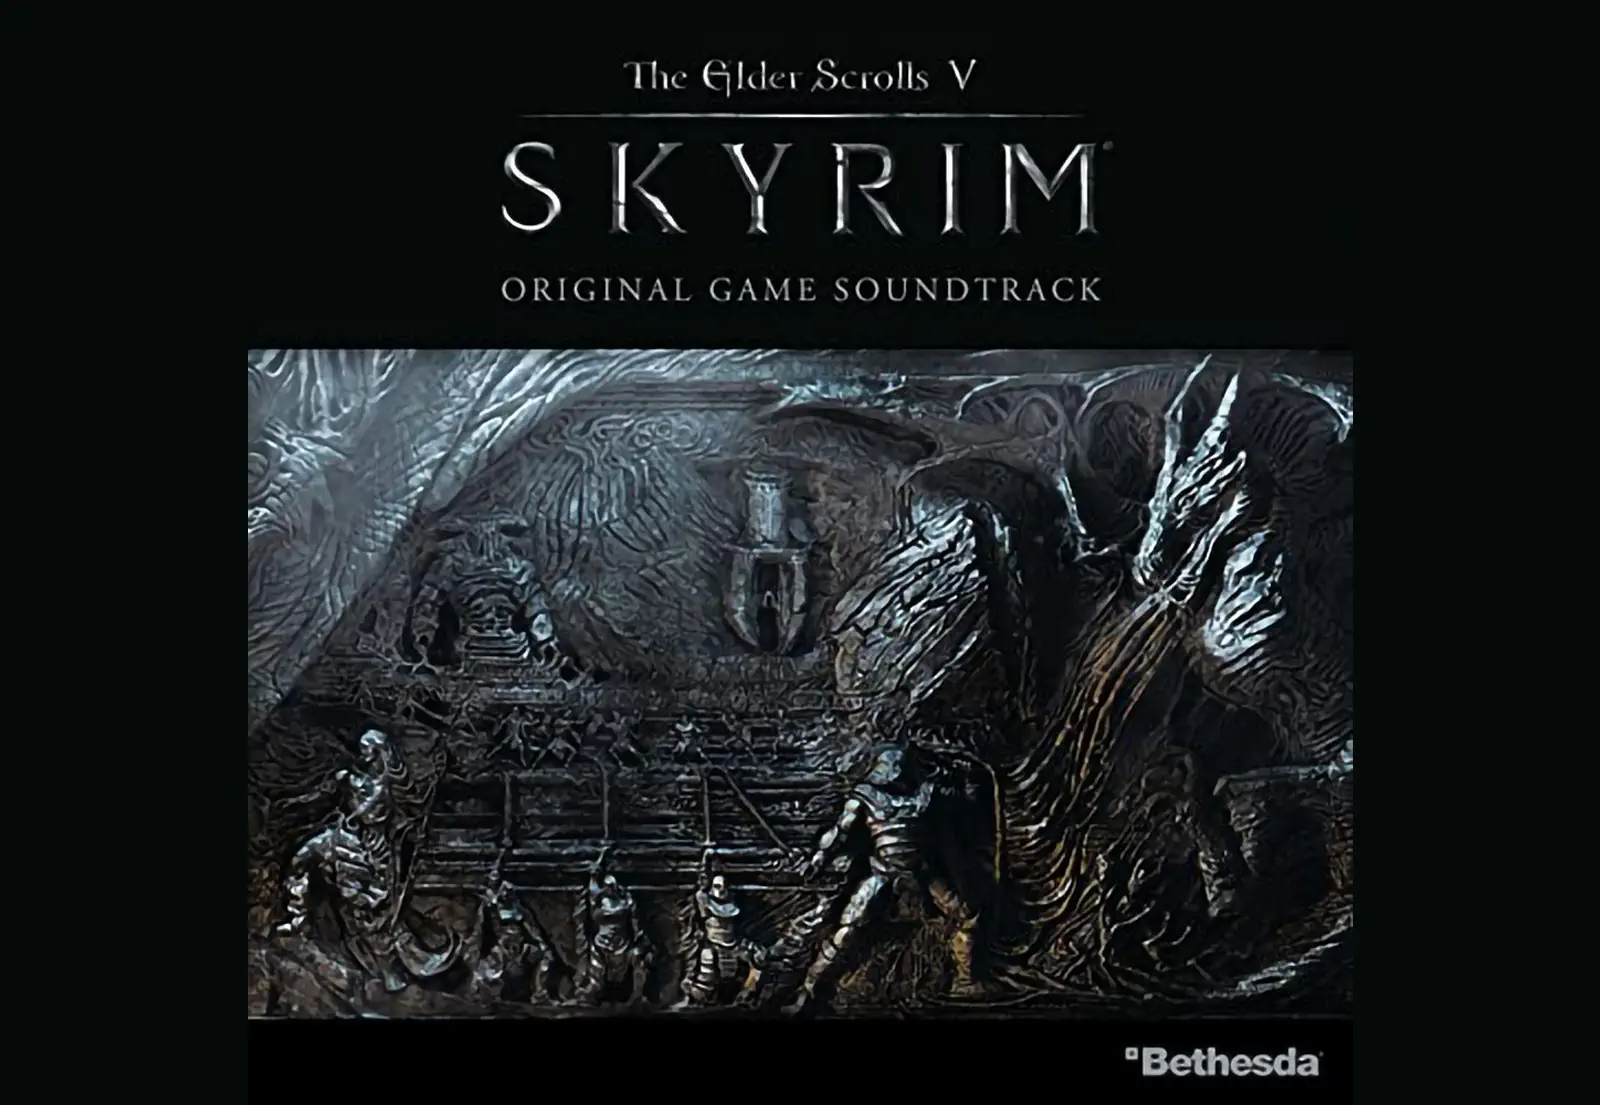 The Elder Scrolls V: Skyrim - Original Game Soundtrack